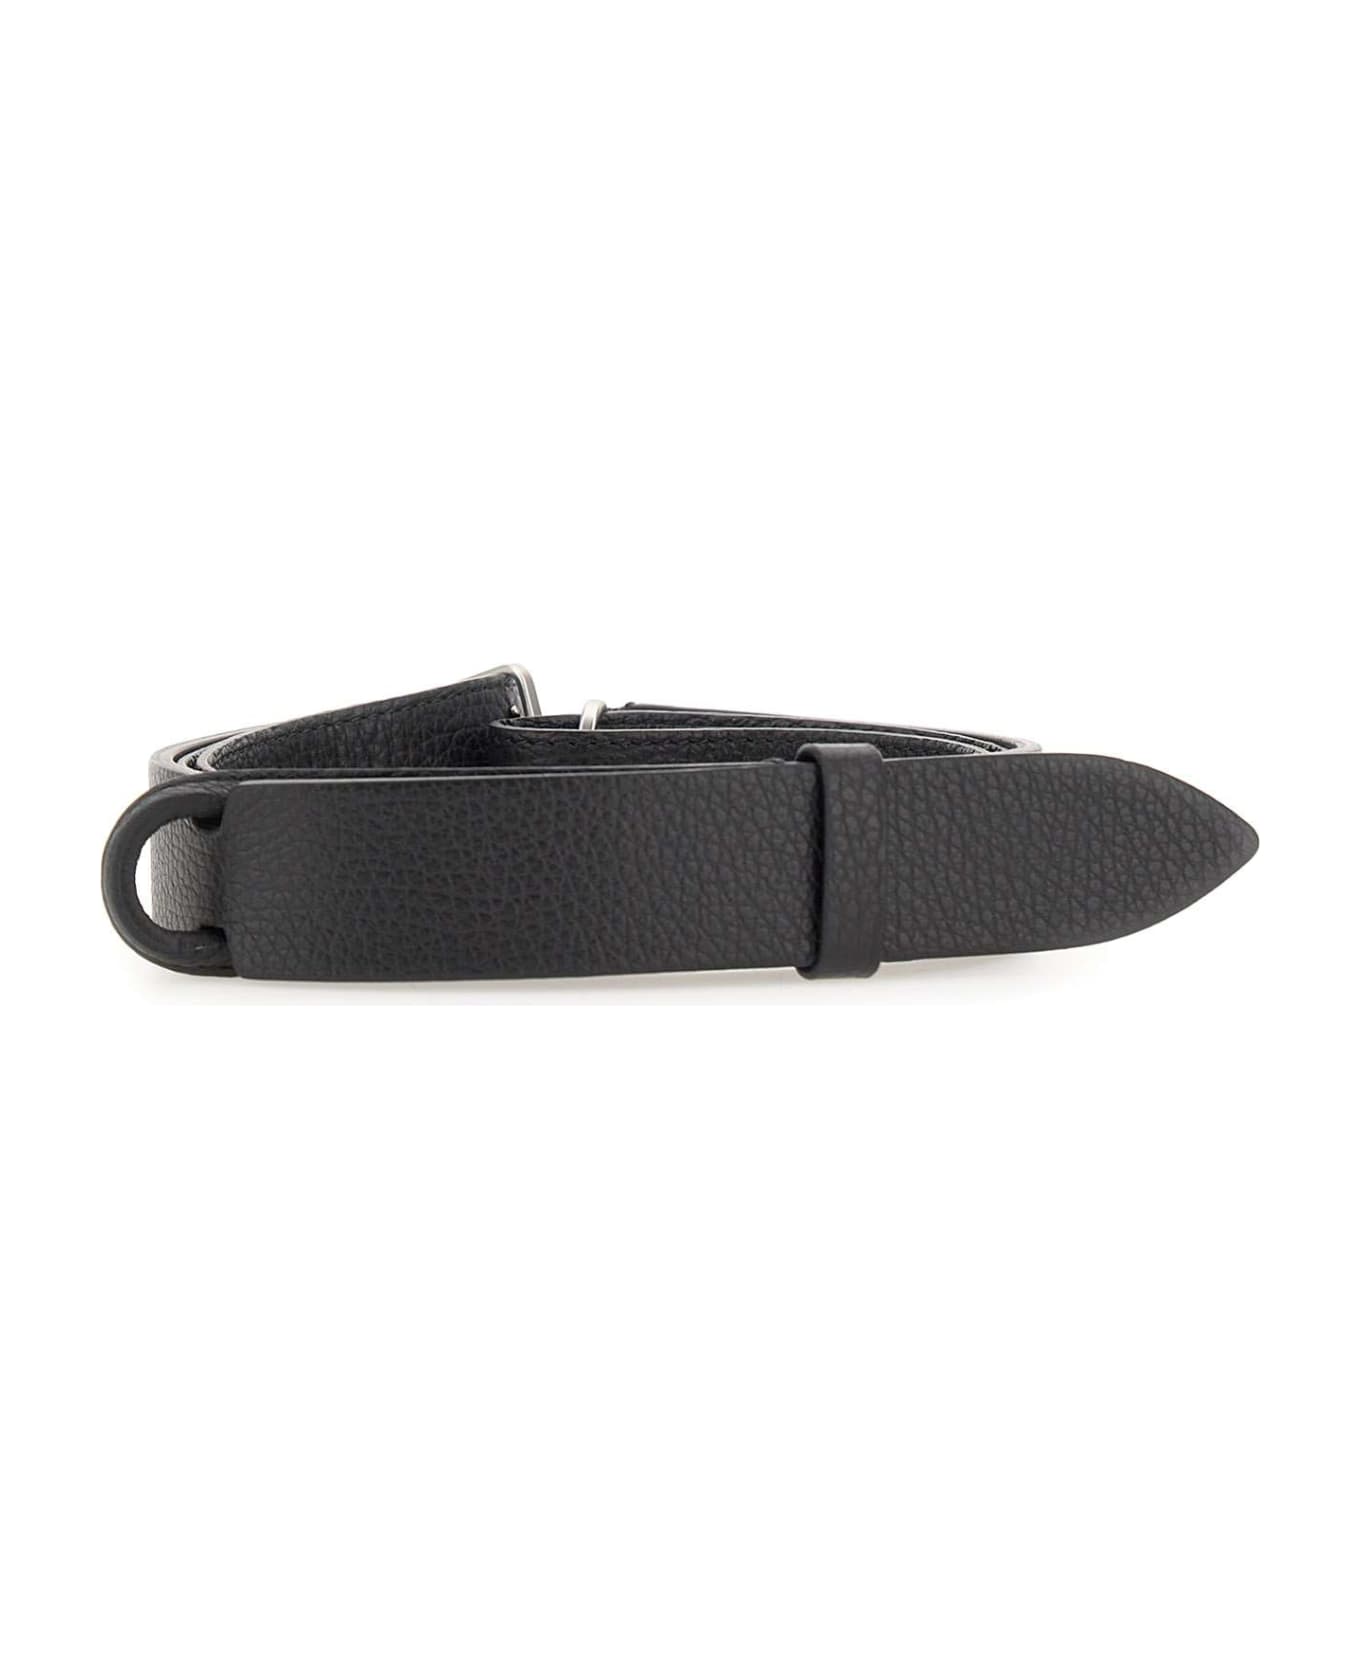 Orciani "nobukle Micron" Leather Belt - BLACK